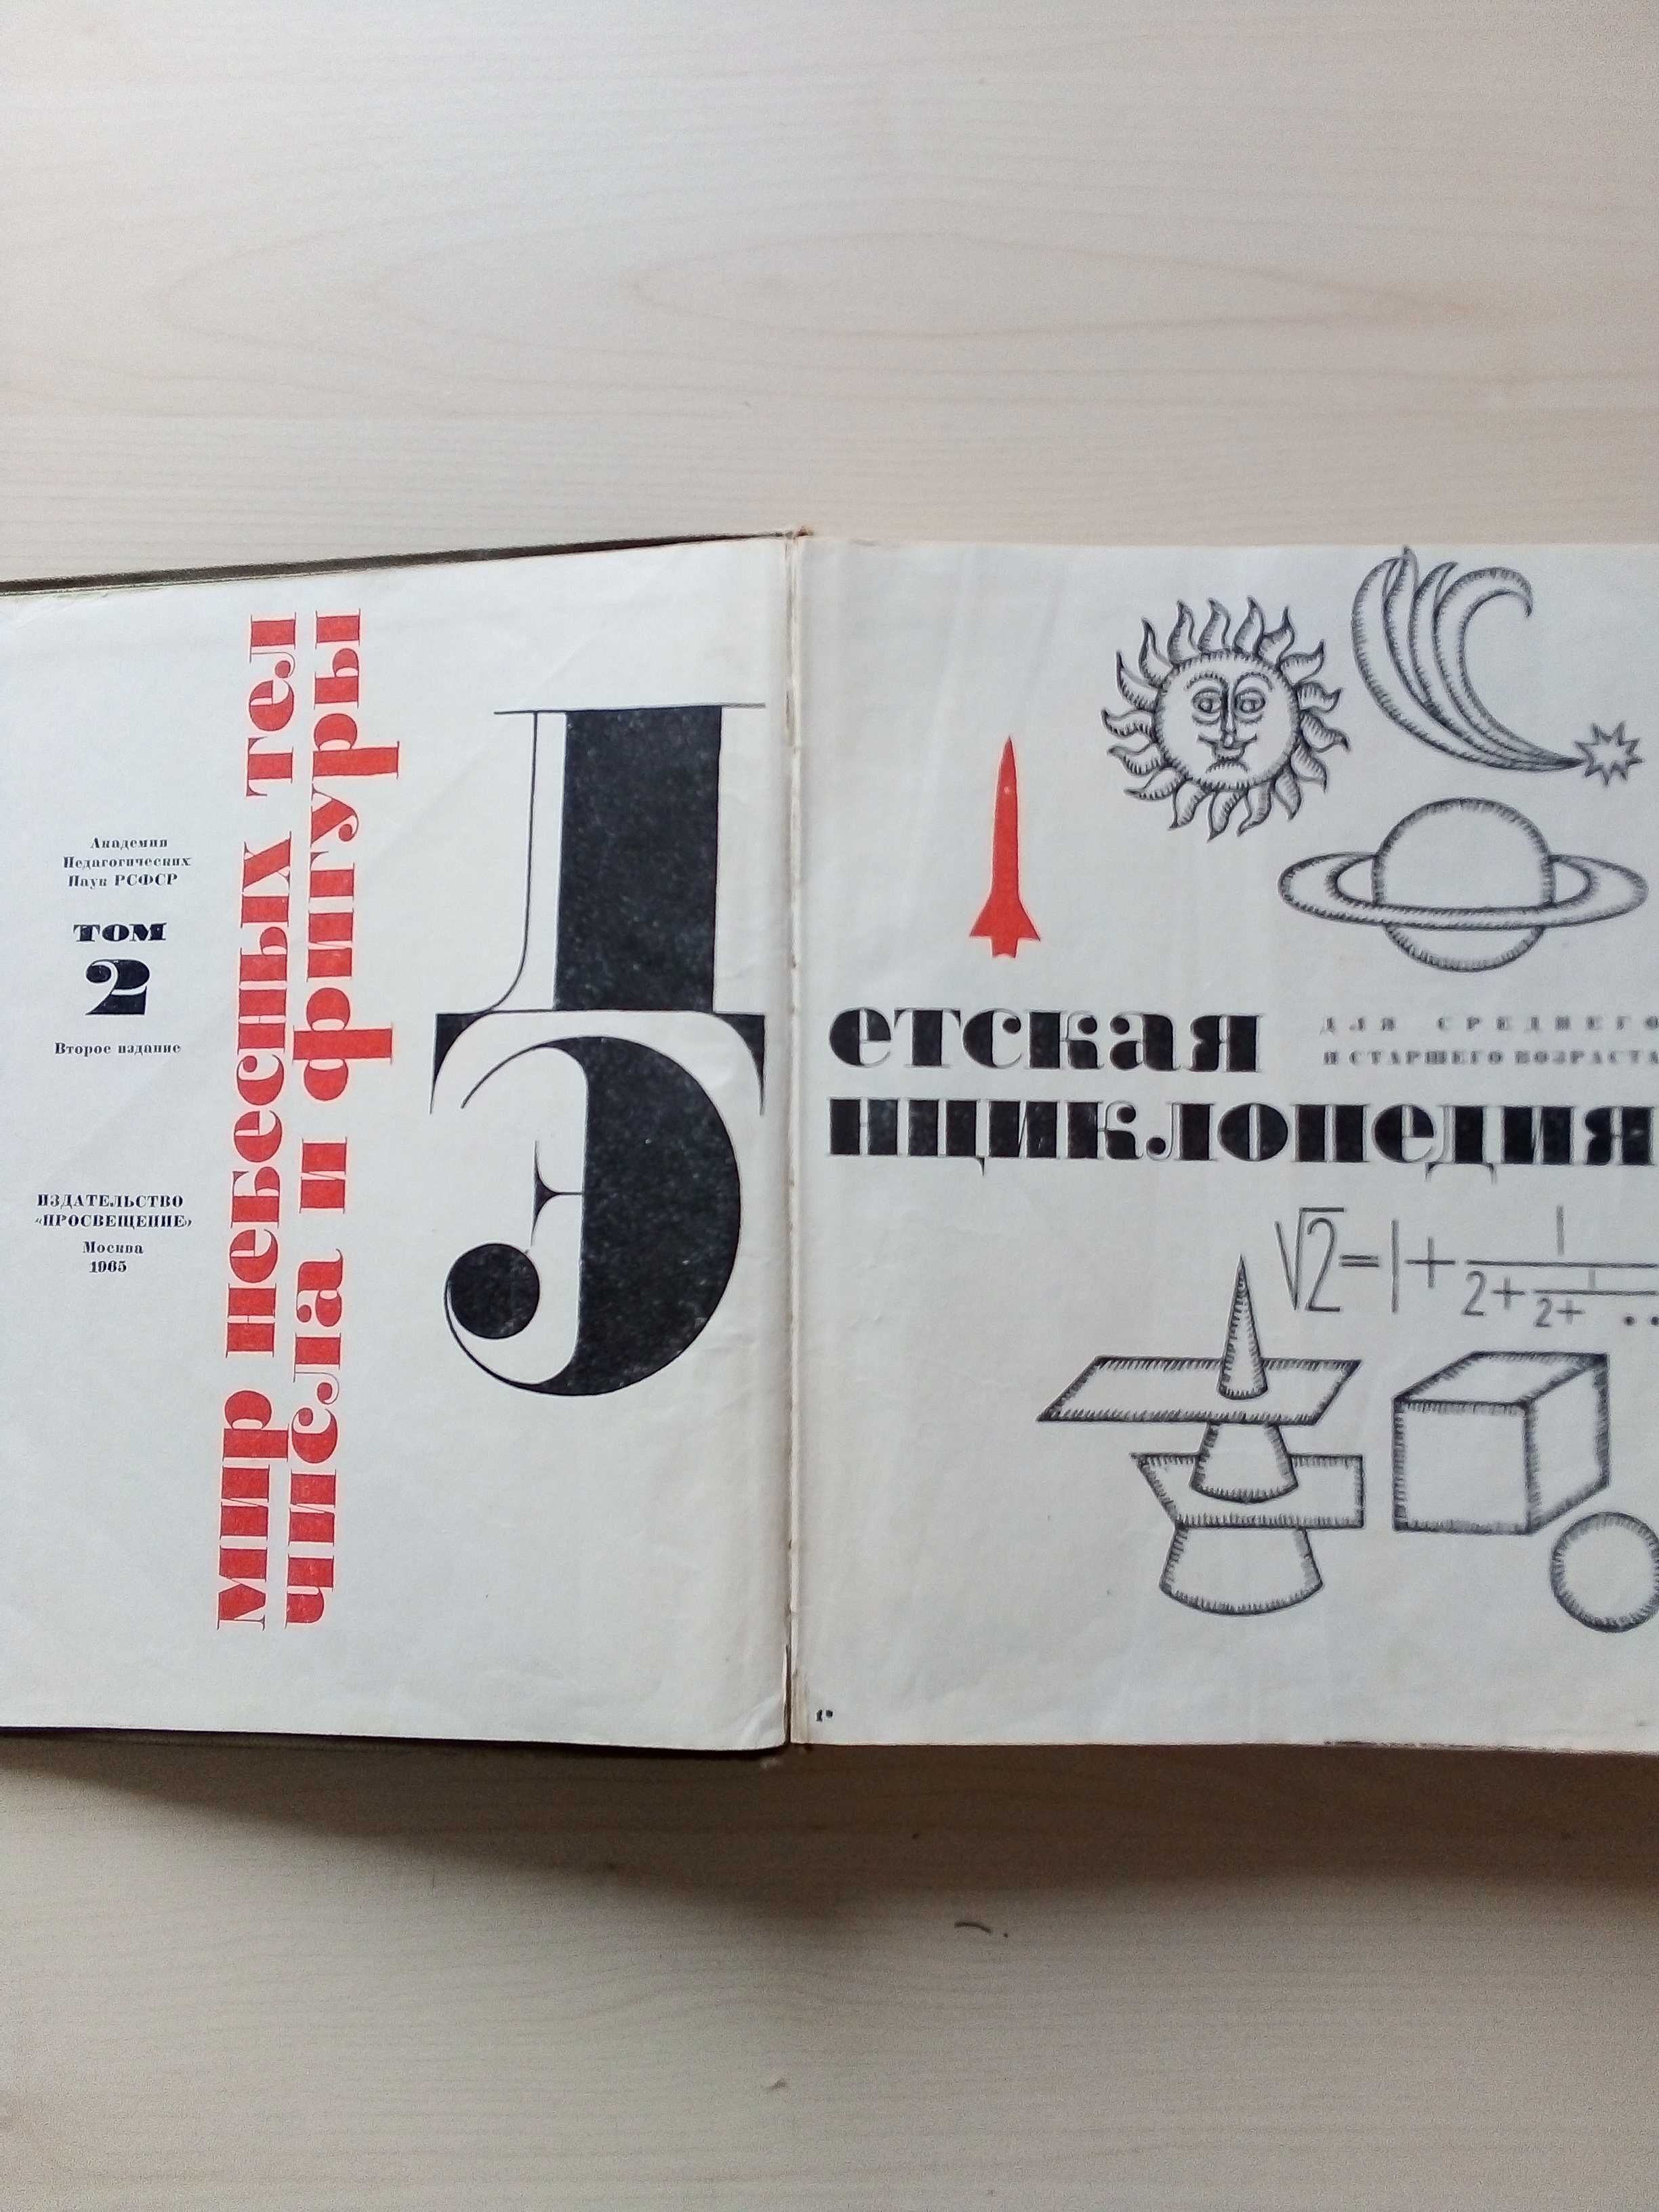 Детская энциклопедия 1965 г. тома 2 и 4